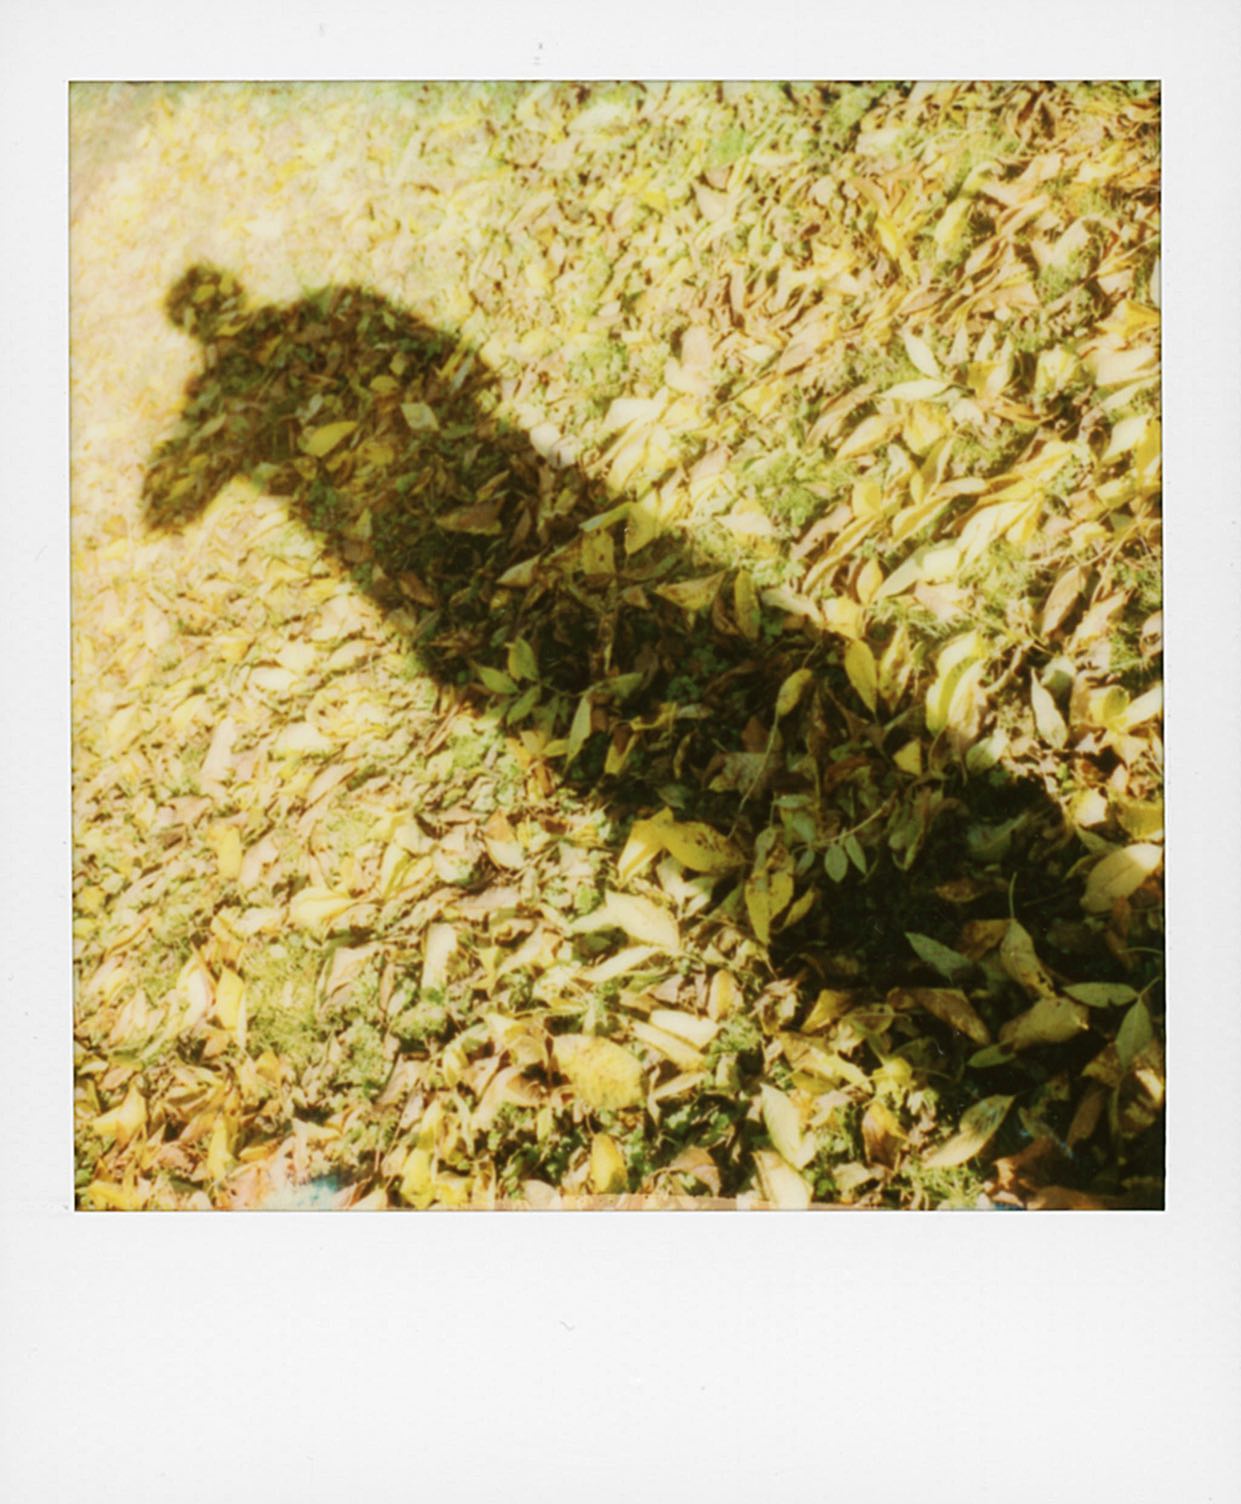 Shadow ...
🔻
🔻
#shadow #tree #mypolaroidnow #polaroid #instantmagazine #polaroidoriginals @polaroid #polaroidoriginals_hk #polaroidoriginals_jp #impossibleproject #sx70 #color600 #instantphoto #analogphotography #instantpic #squarepic #polazine #polaroidoftheday #squaremag #thepolavoid #_instnt #instantfilmsociety #polaroidcommunity🎞 #polazine #polaroid_asia